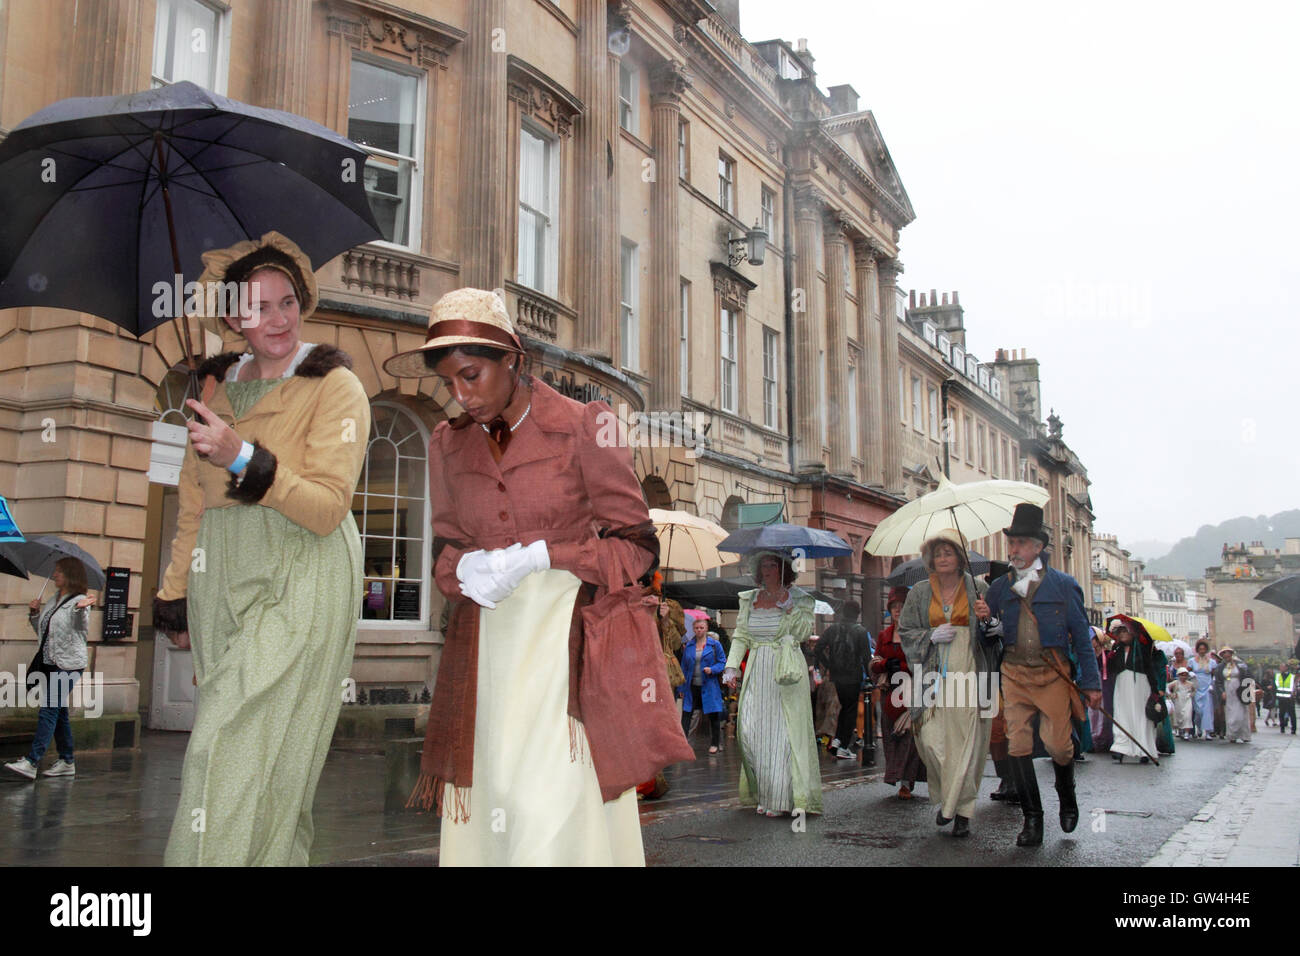 Festival de Jane Austen. 9th-18th September 2016. Bath, Somerset, Angleterre, Royaume-Uni. La pluie n'a pas réussi à refroidir l'enthousiasme des participants à la promenade en costume Grand Regency, samedi 10 septembre 2016. Crédit : Ian bouteille/Alamy Live News Banque D'Images